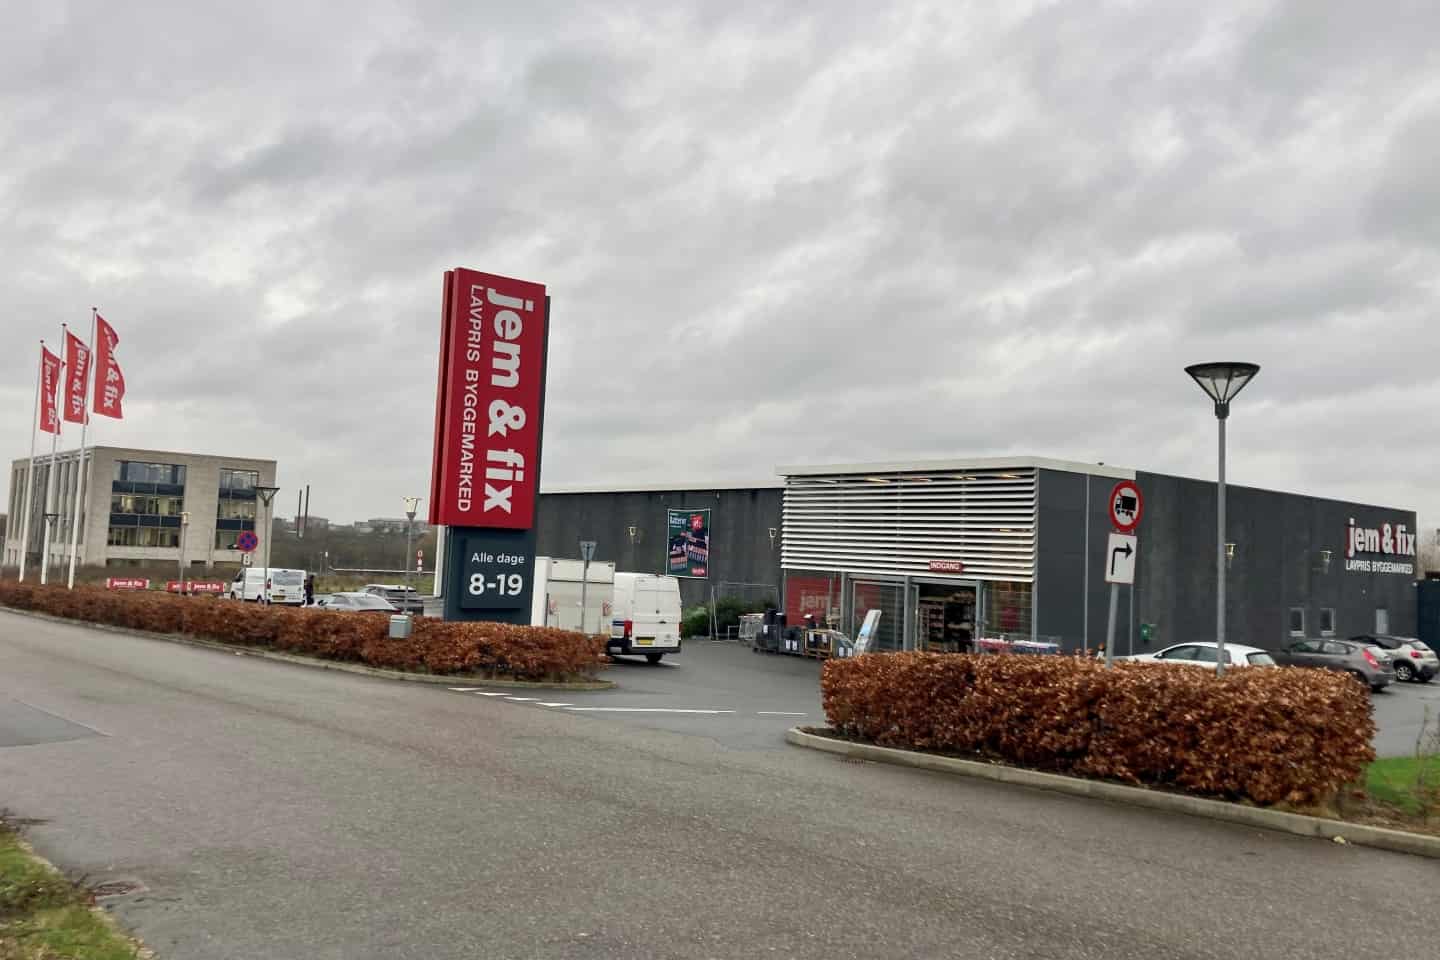 Jem & Fix Vejles måske mest synlige placering: Derfor byggemarkedet valgt en ny placering til en større butik | vafo.dk